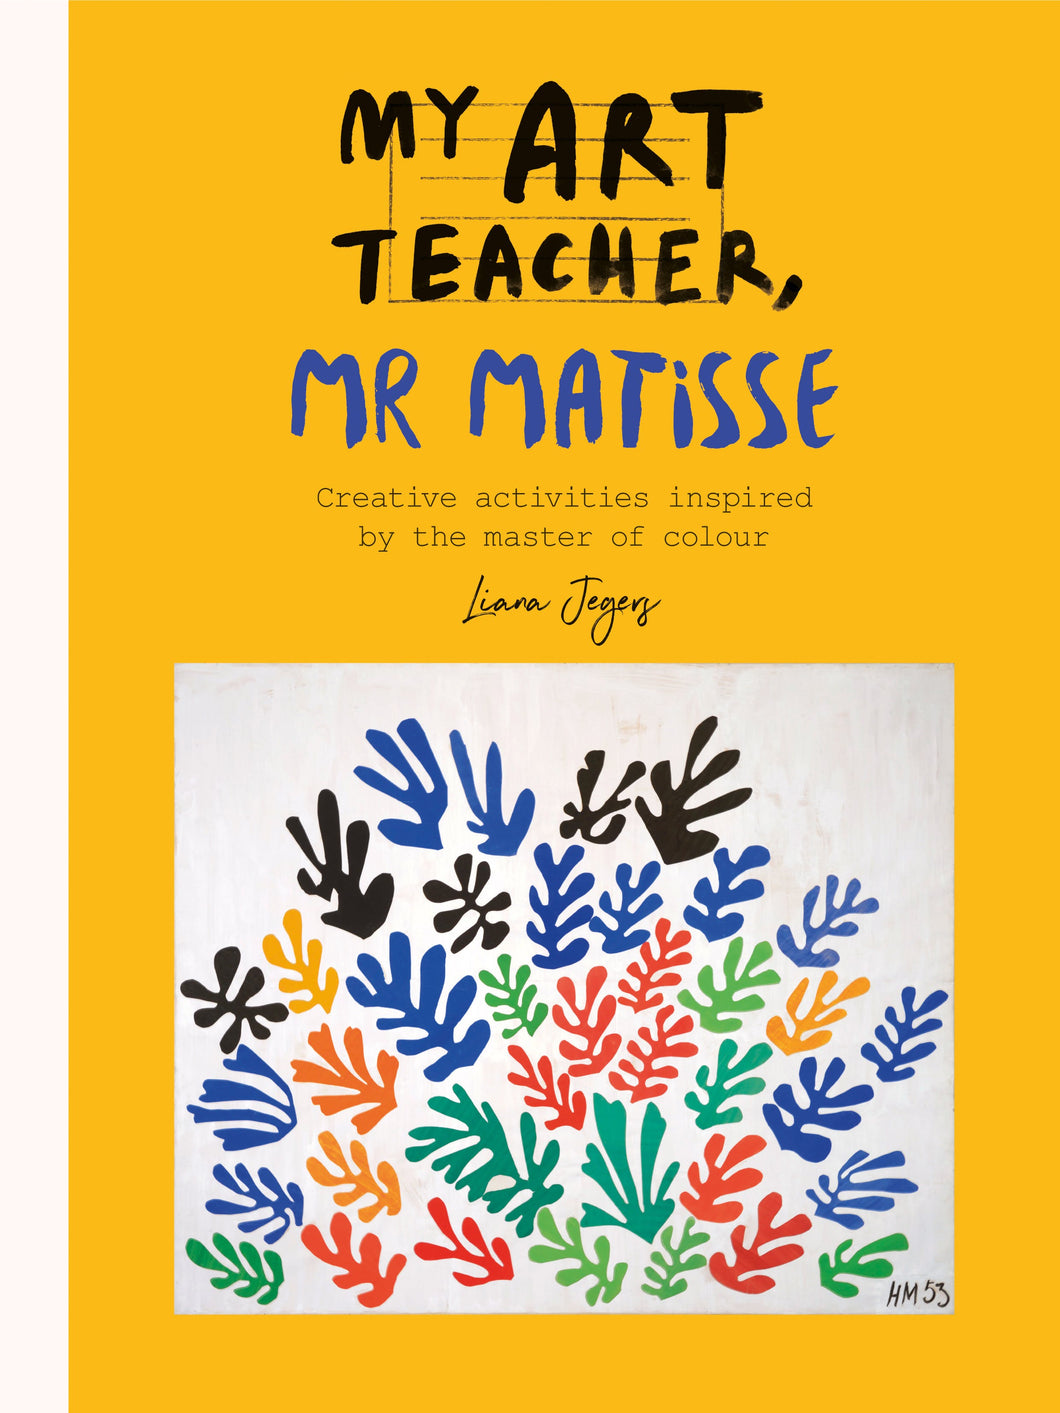 My Art Teacher, Mr. Matisse